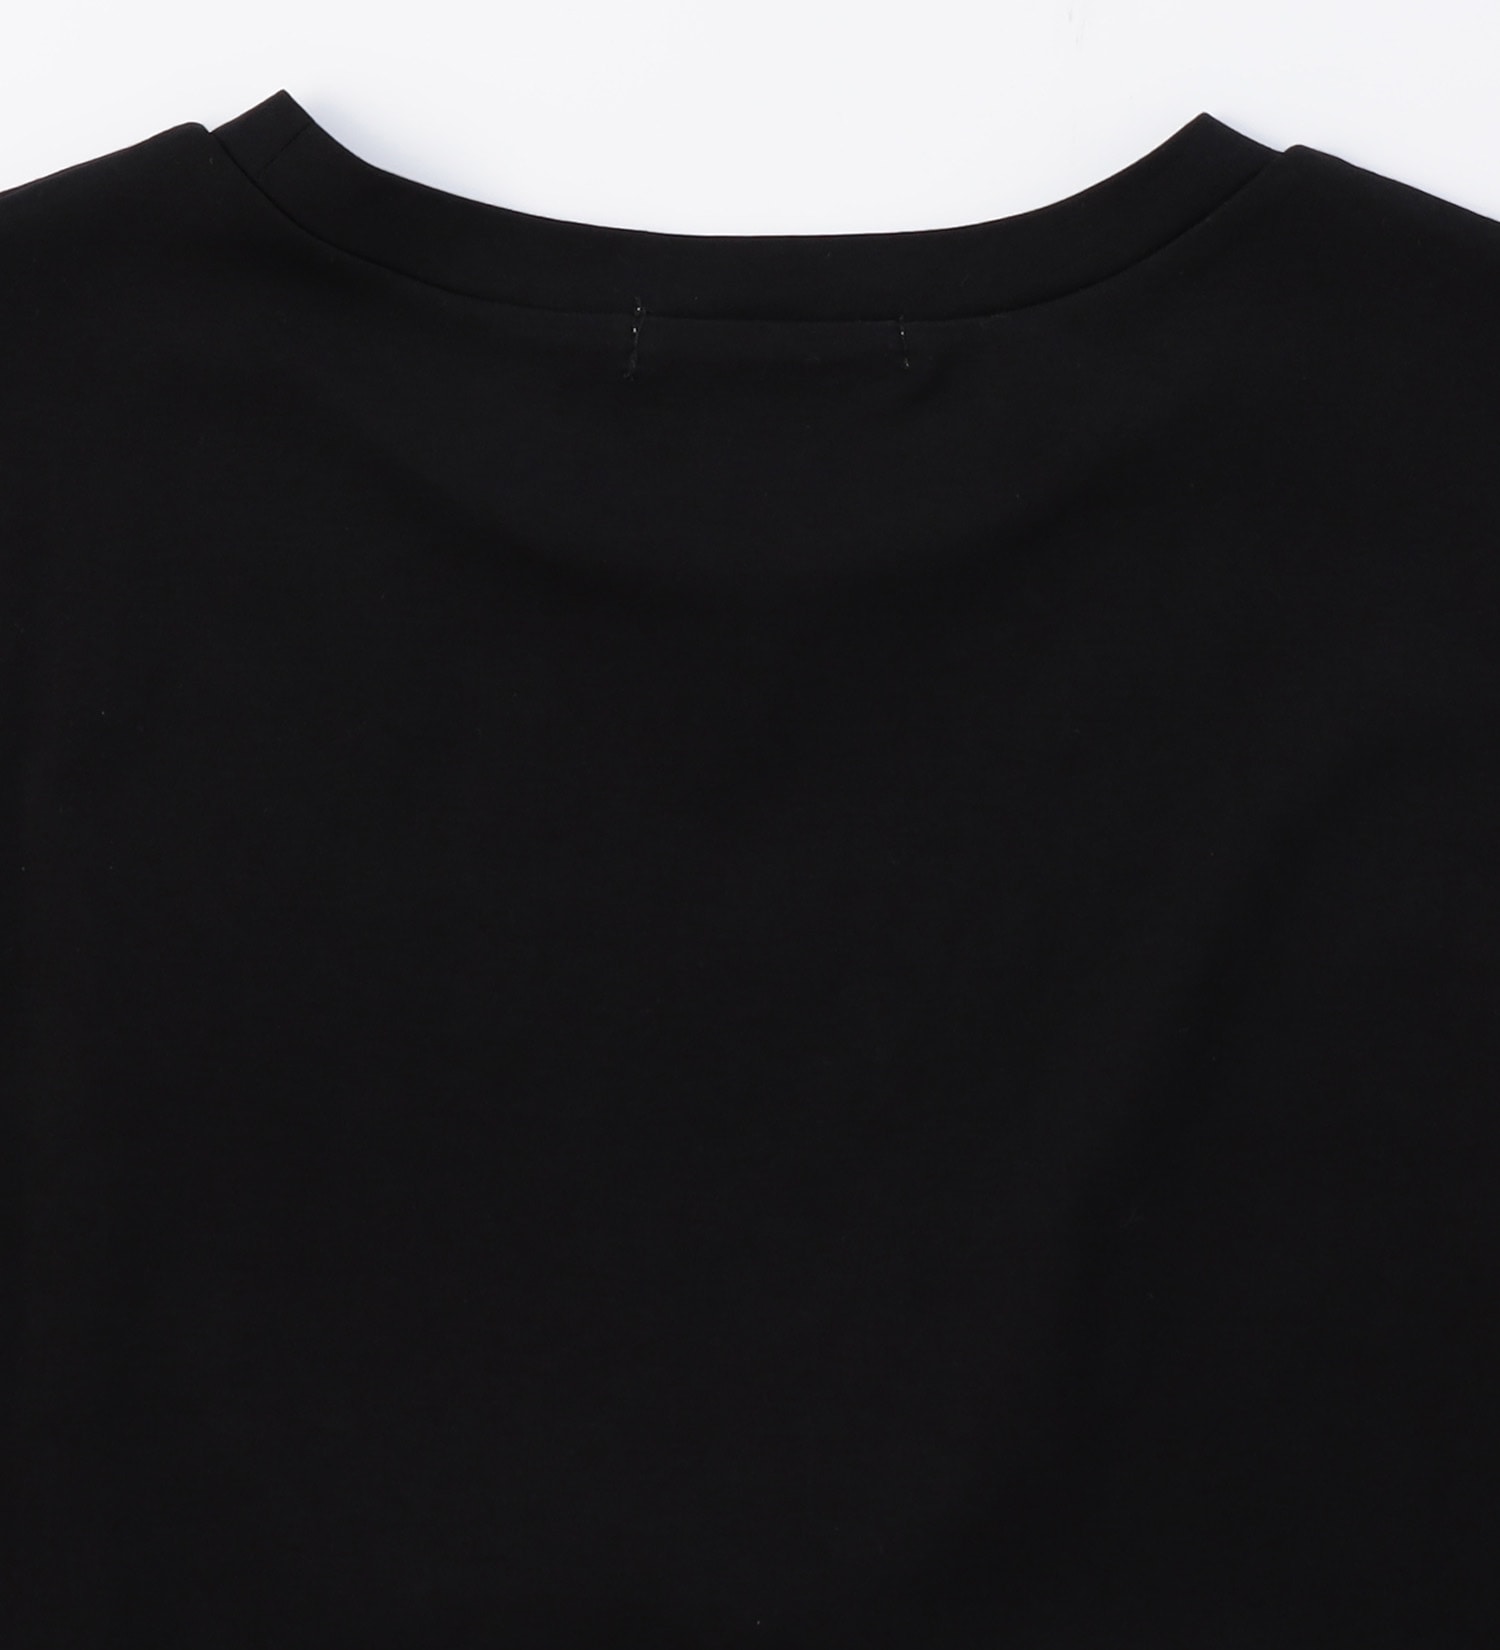 EDWIN(エドウイン)の【BLACKFRIDAY】ウエストリボン プルオーバーカットソー【アウトレット店舗・WEB限定】|トップス/Tシャツ/カットソー/レディース|ブラック